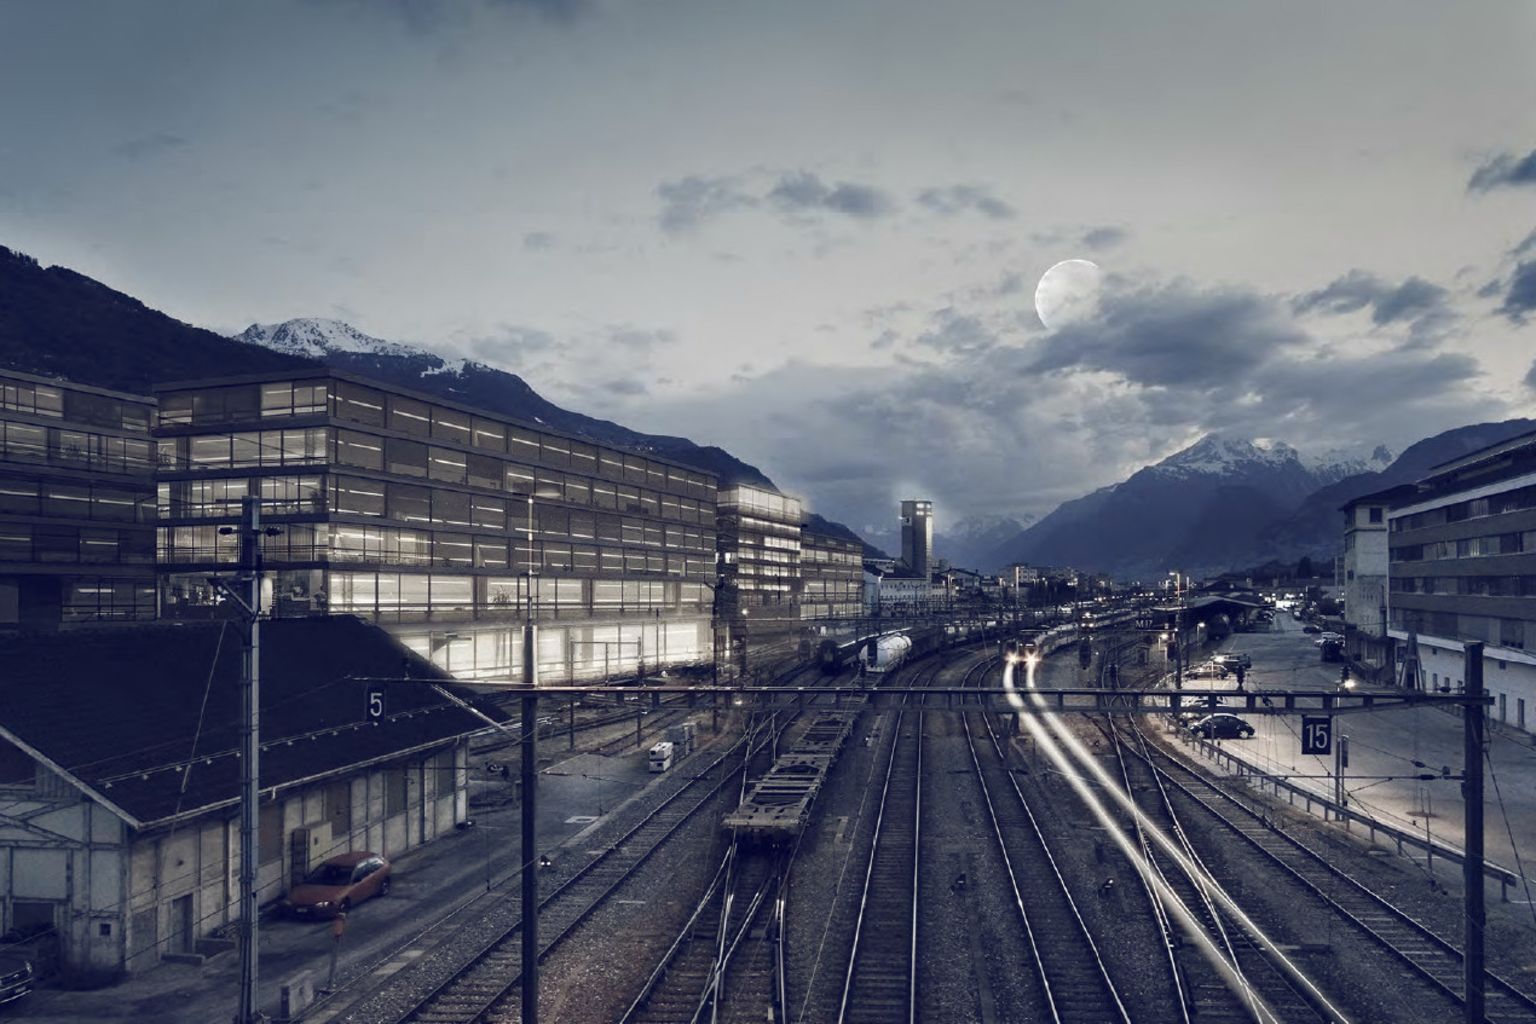 Die Niederlassung der École polytechnique fédérale de Lausanne (EPFL) im Wallis ist eines der wichtigsten strategischen Projekte für die Zukunft des Kantons.